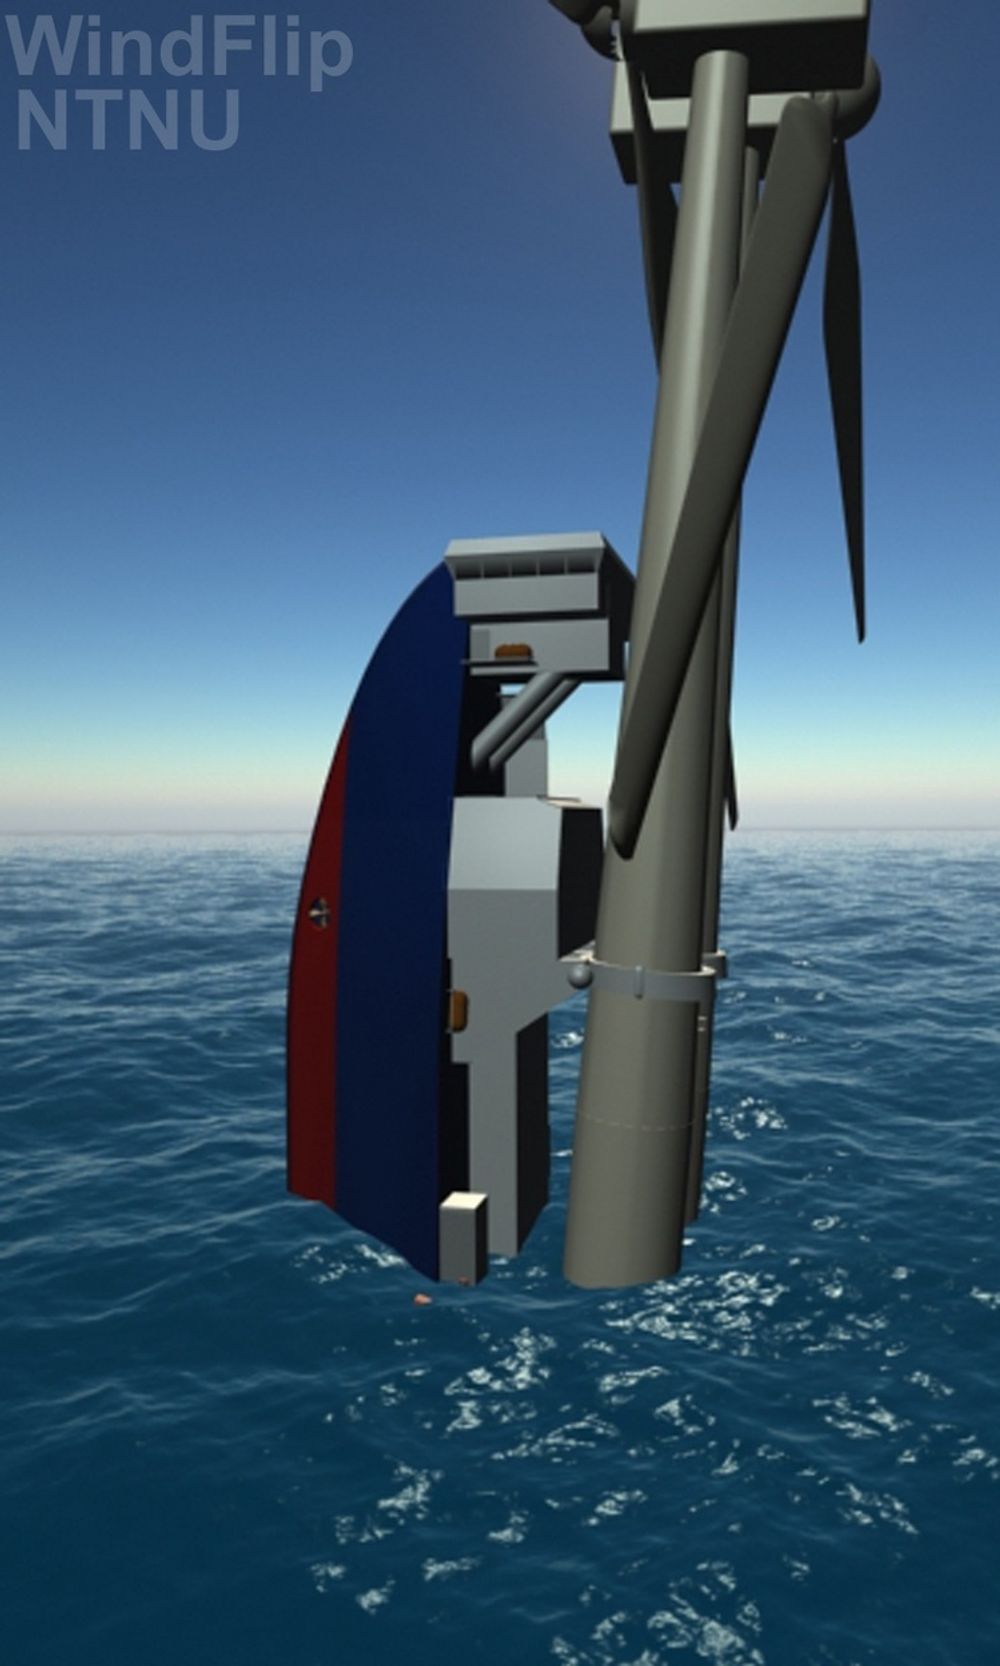 TURBINEN SENKES NED: Skipet, som har fått det illustrerende navnet Windflip, kan "flippe" og bokstavelig talt stilles på høykant ned i sjøen. Dermed kan vindturbinene forløses fra skipet på en mer kontrollert og sikker måte. Når turbinene skal installeres flipper hele skipet 90 grader, og beveger seg minimalt i bølgene.